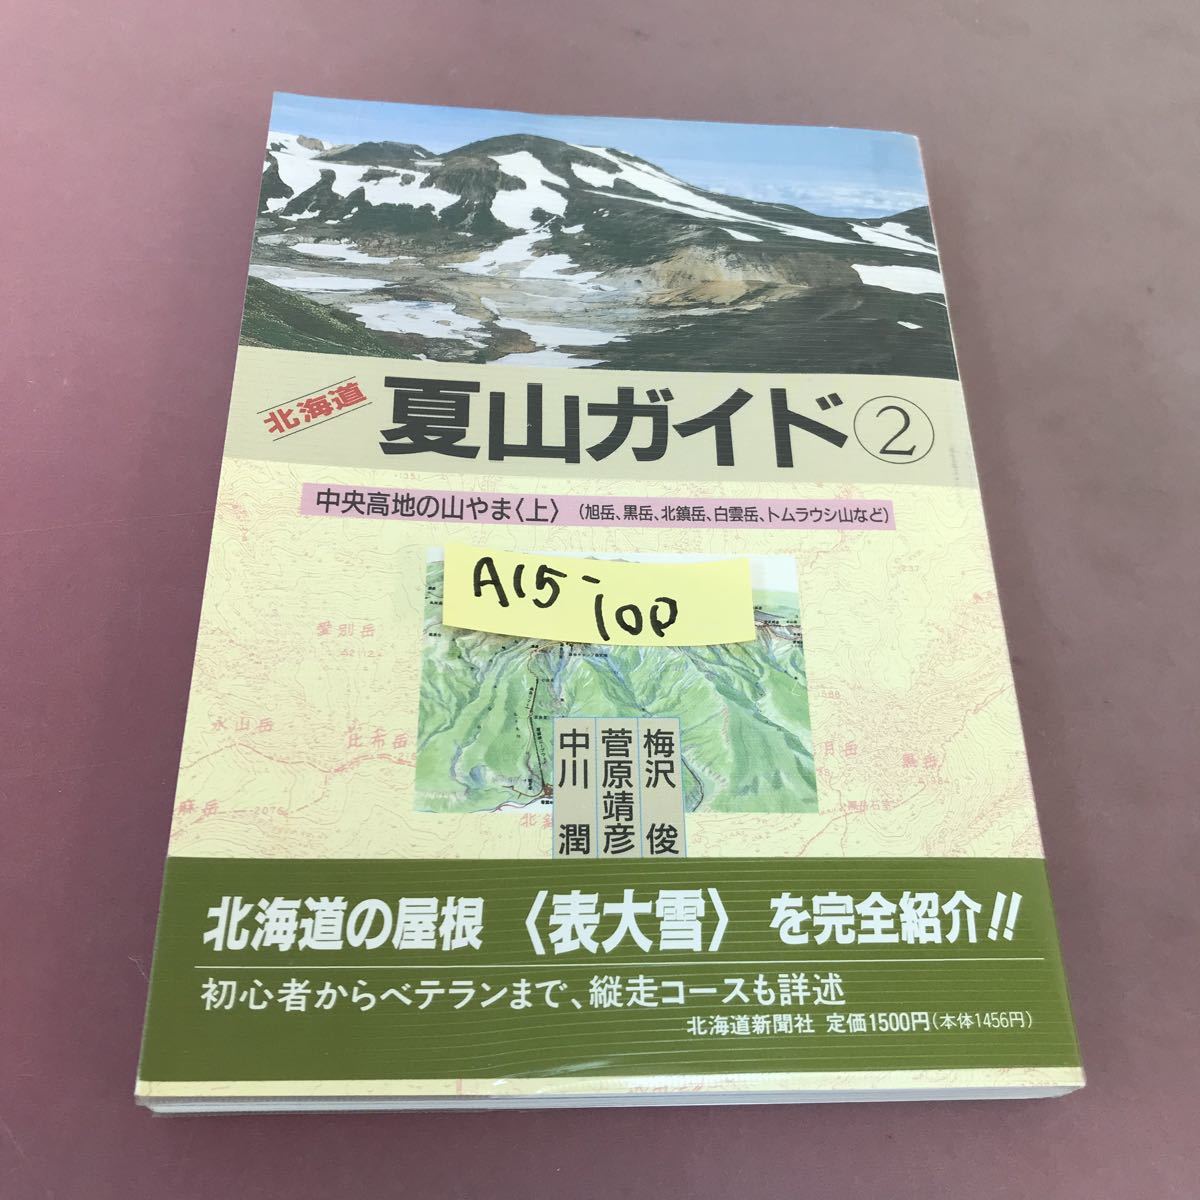 公式の A15-100 北海道 夏山ガイド 2 中央高地の山やま 上 北海道新聞